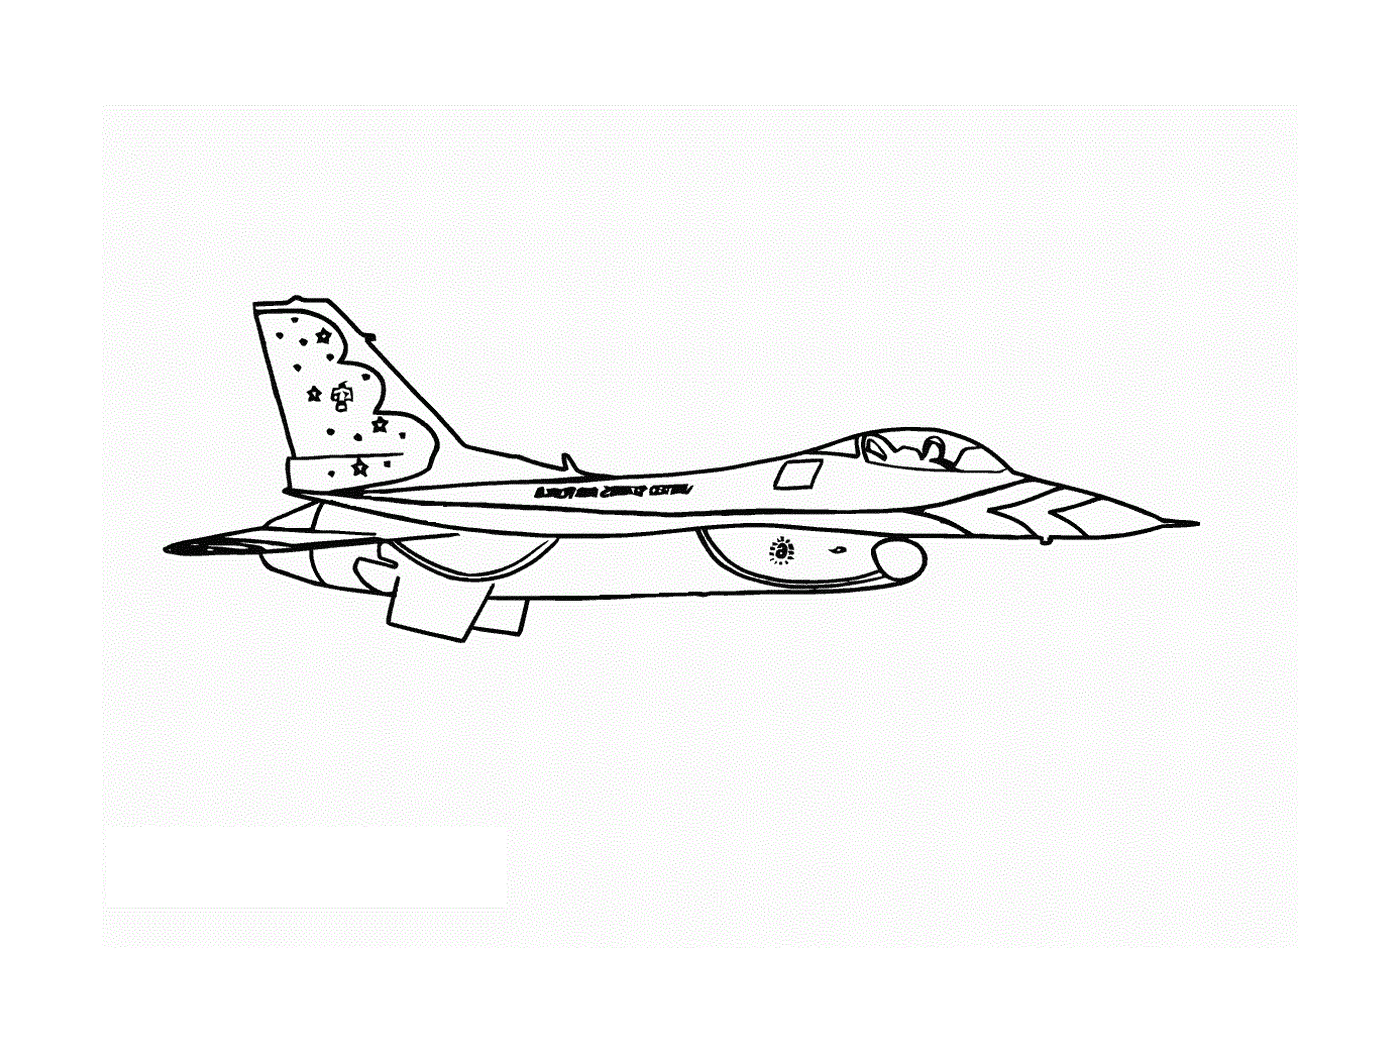  Un aereo da caccia è disegnato 